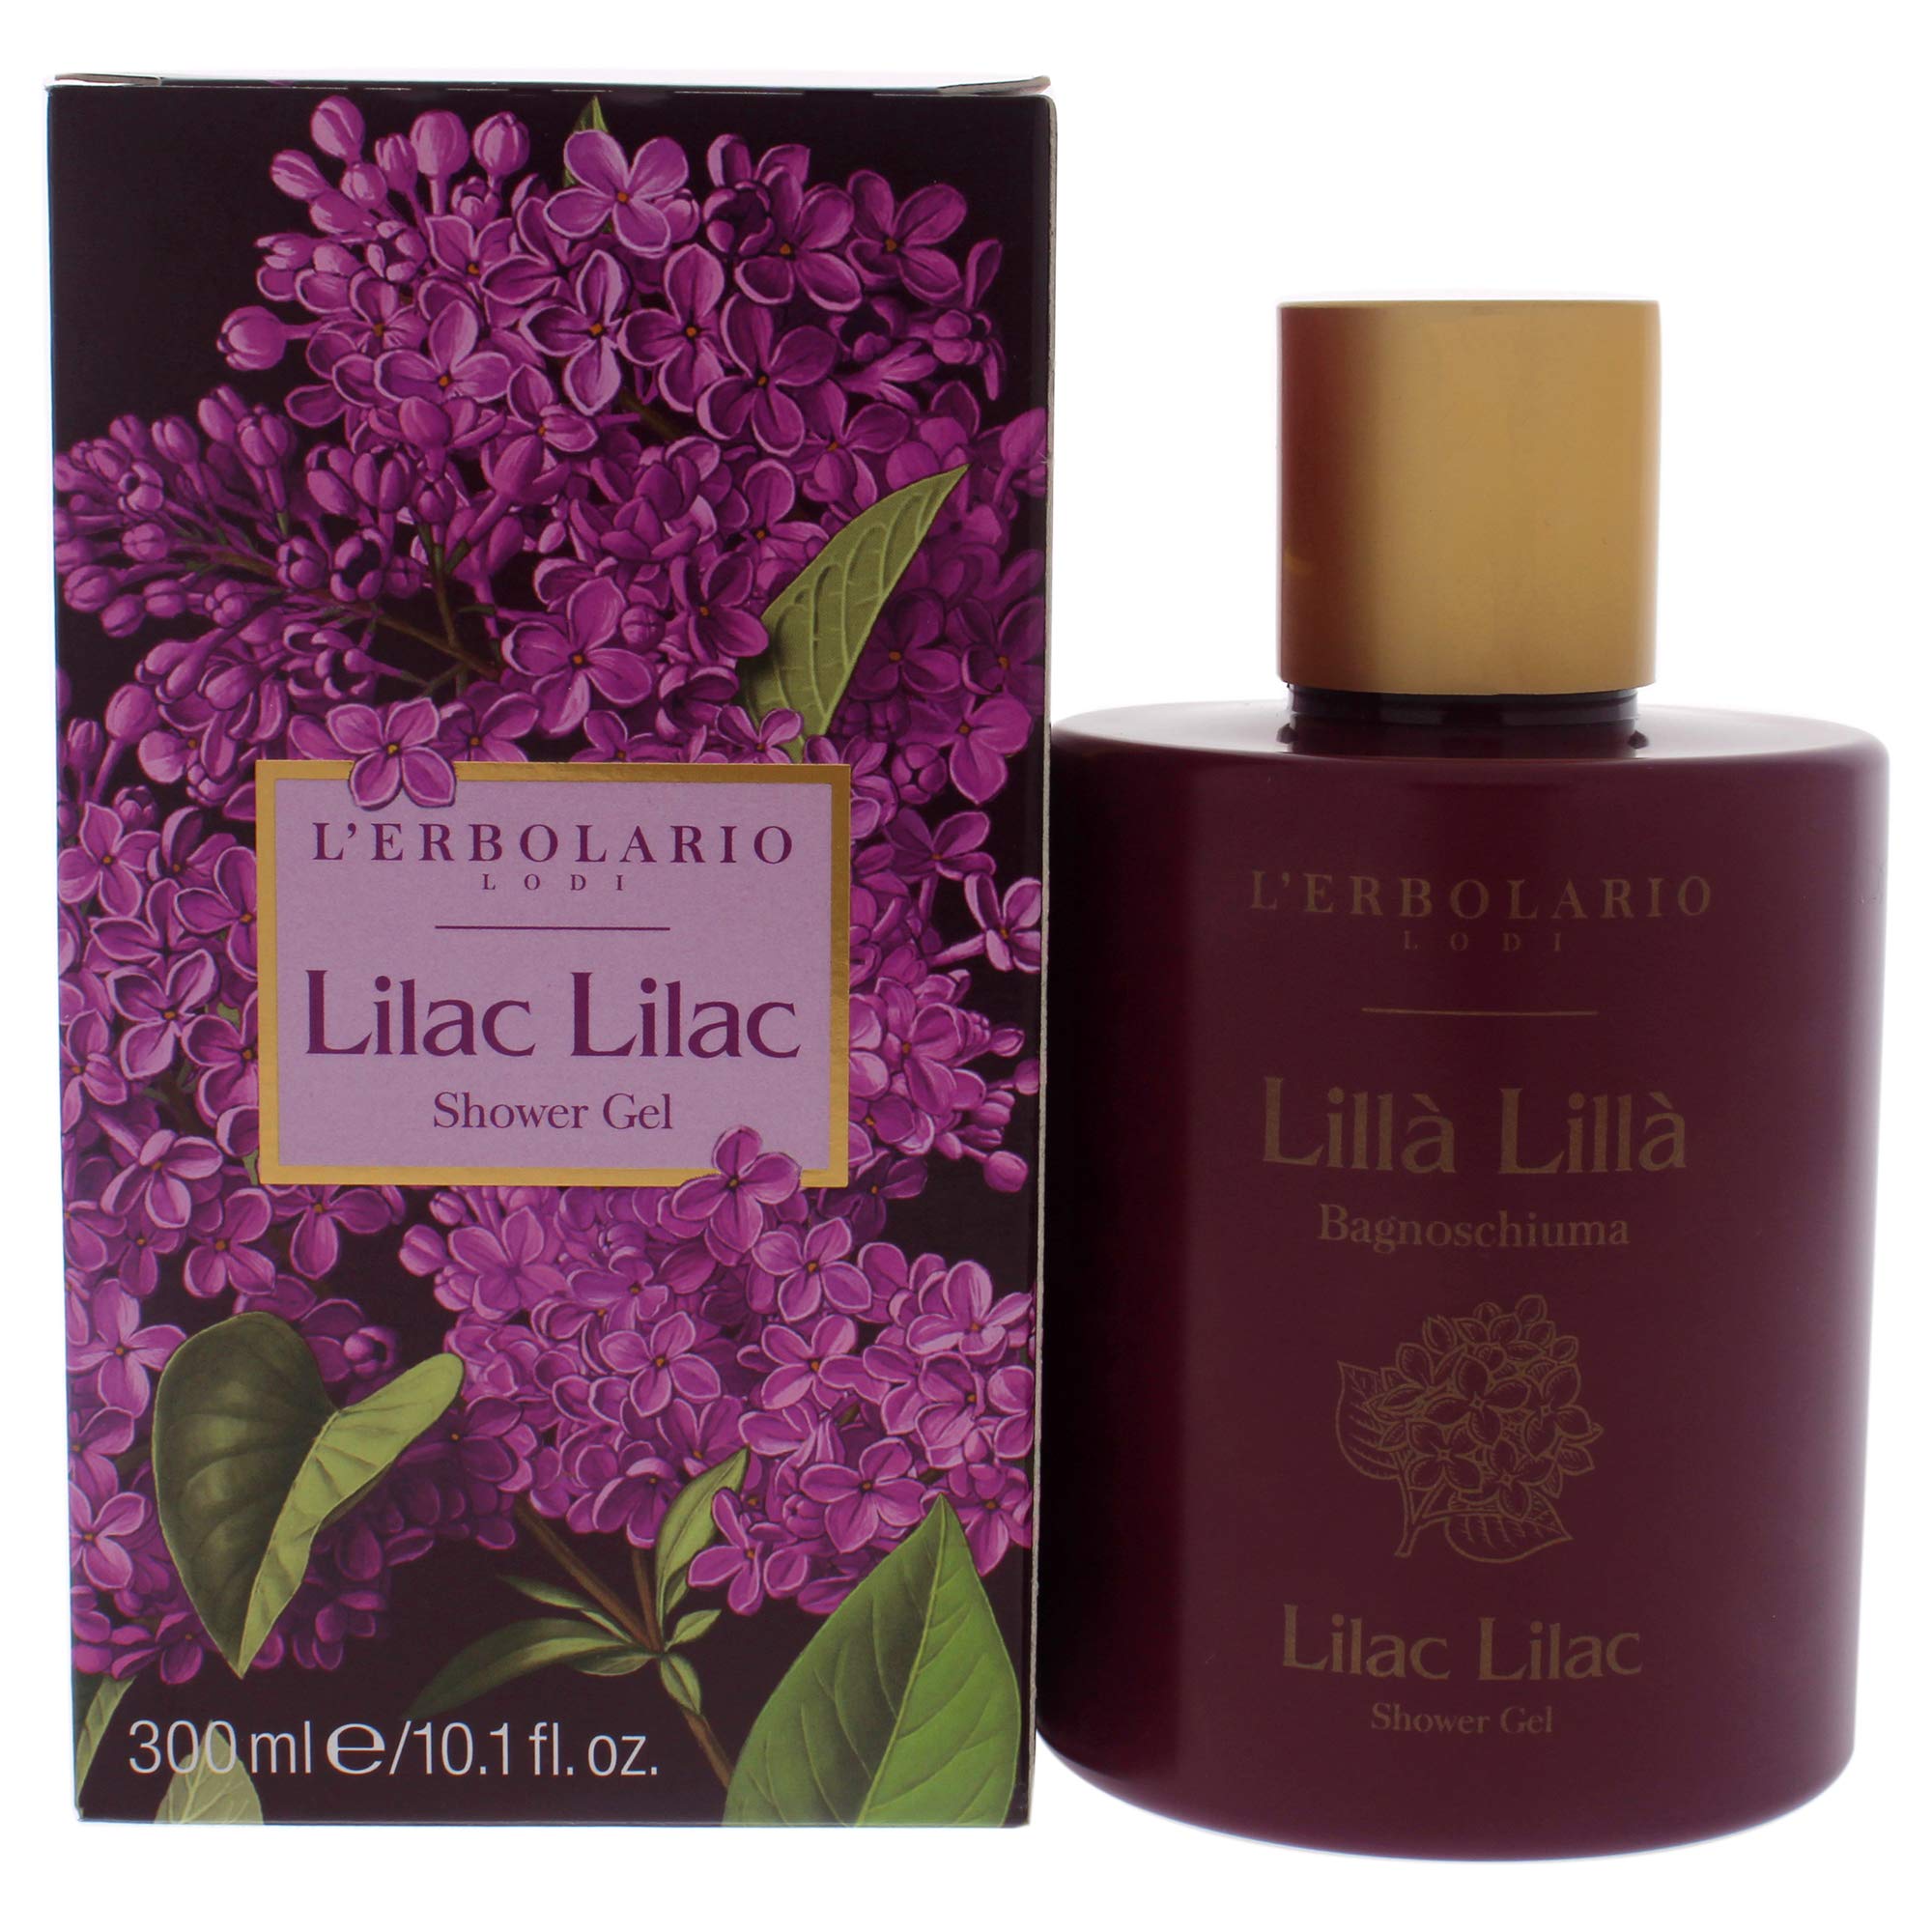 Lilac Lilac Shower Gel by LErbolario for Women - 10.1 oz Shower Gel